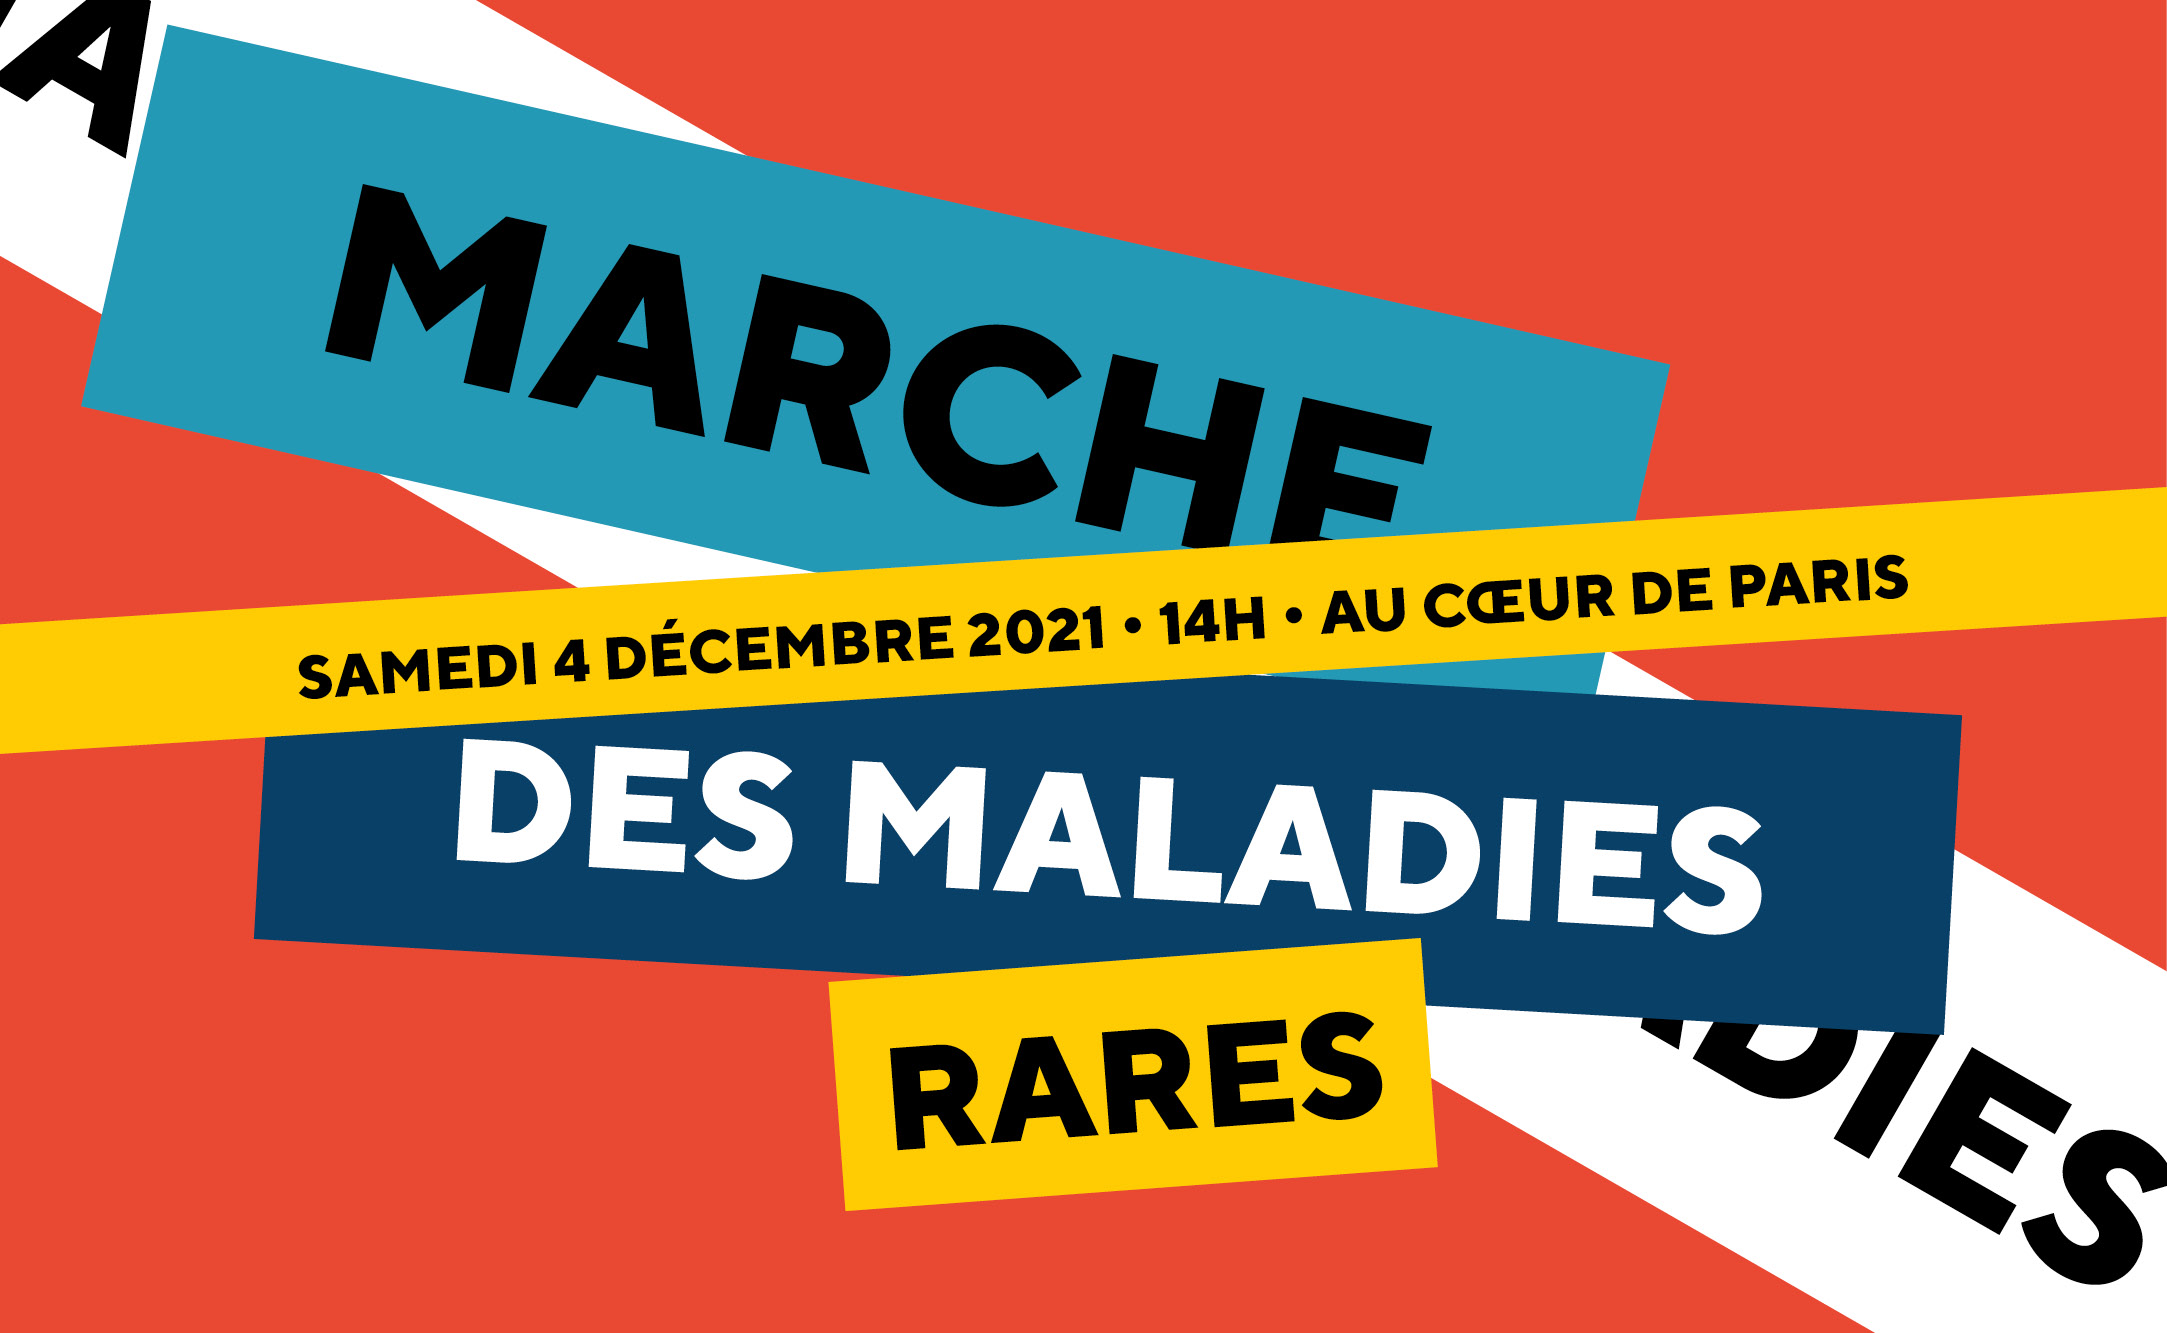 Ile-de-France - Marche des maladies rares - décembre 2021